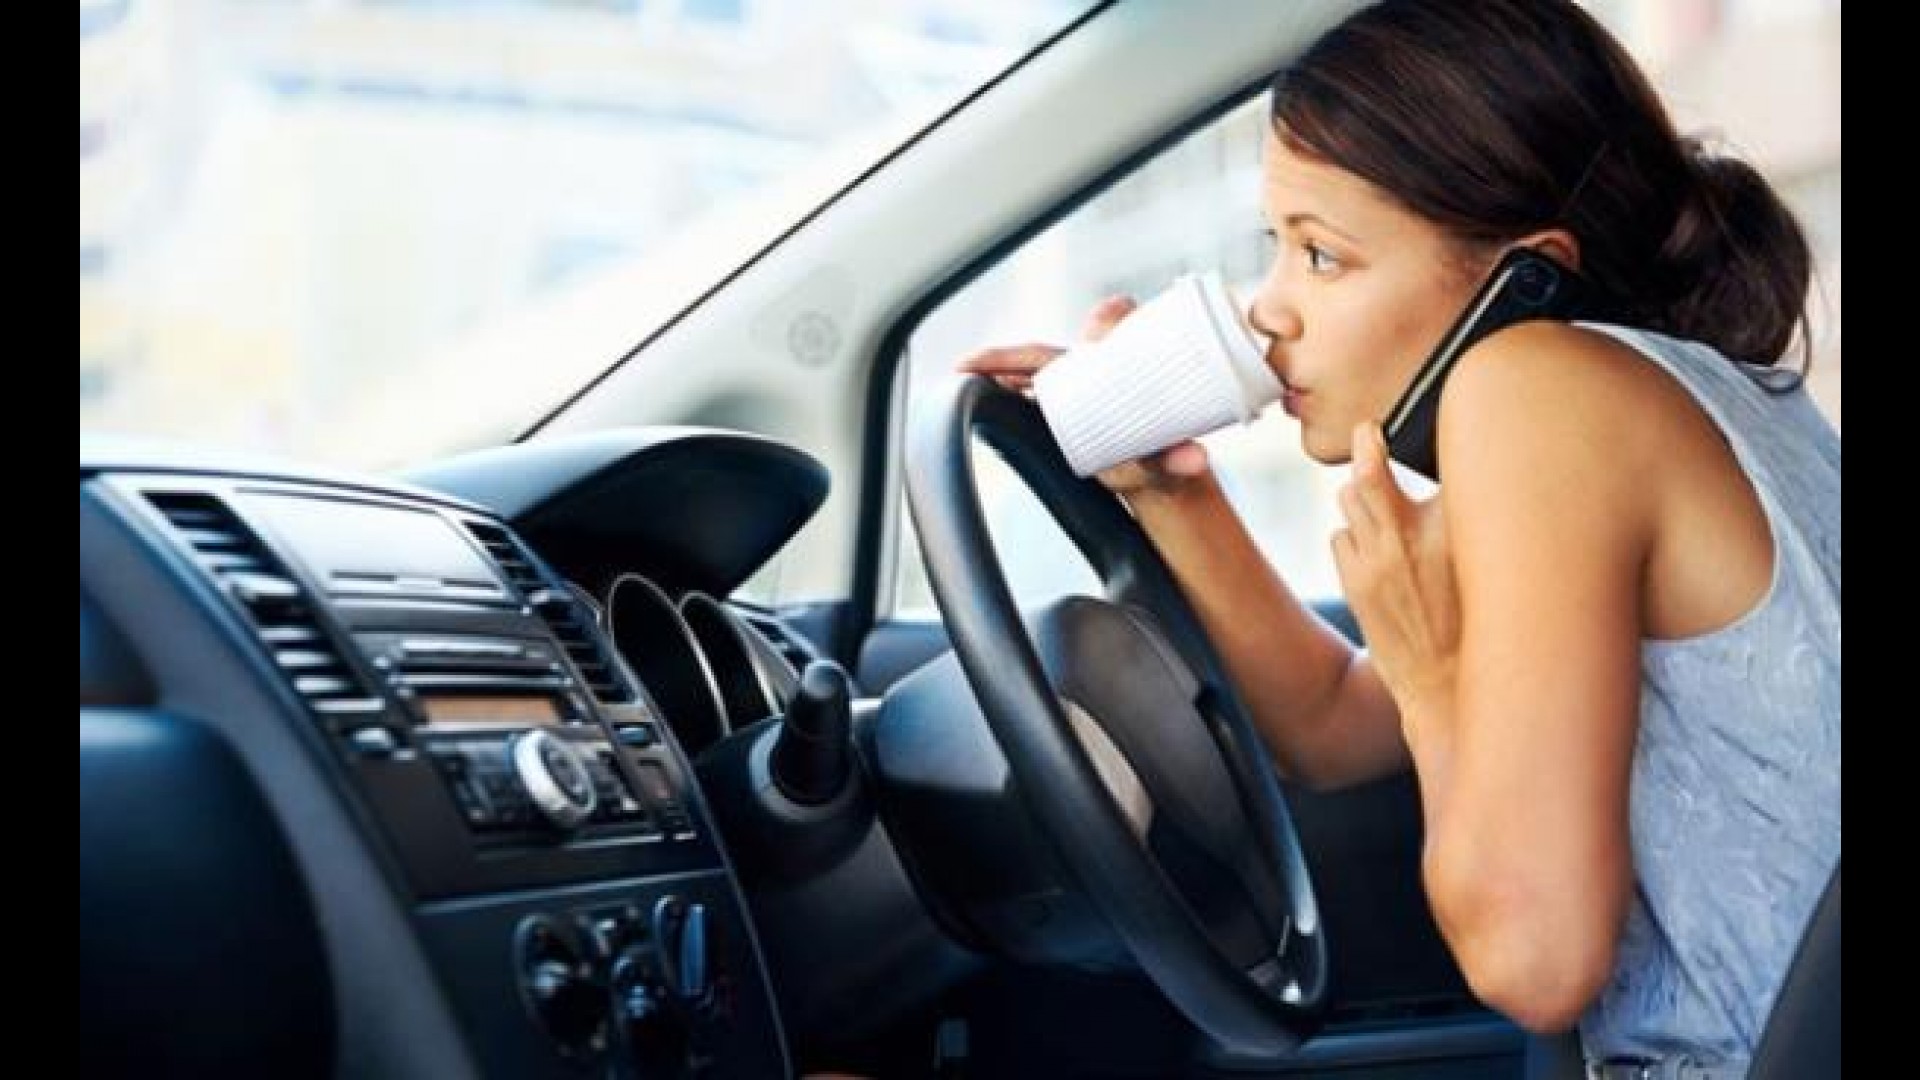 Araç Kullanırken Cep Telefonu Kullanımı Riskleri Nelerdir? Arabada Cep Telefonu İle Konuşmanın Cezası 2019